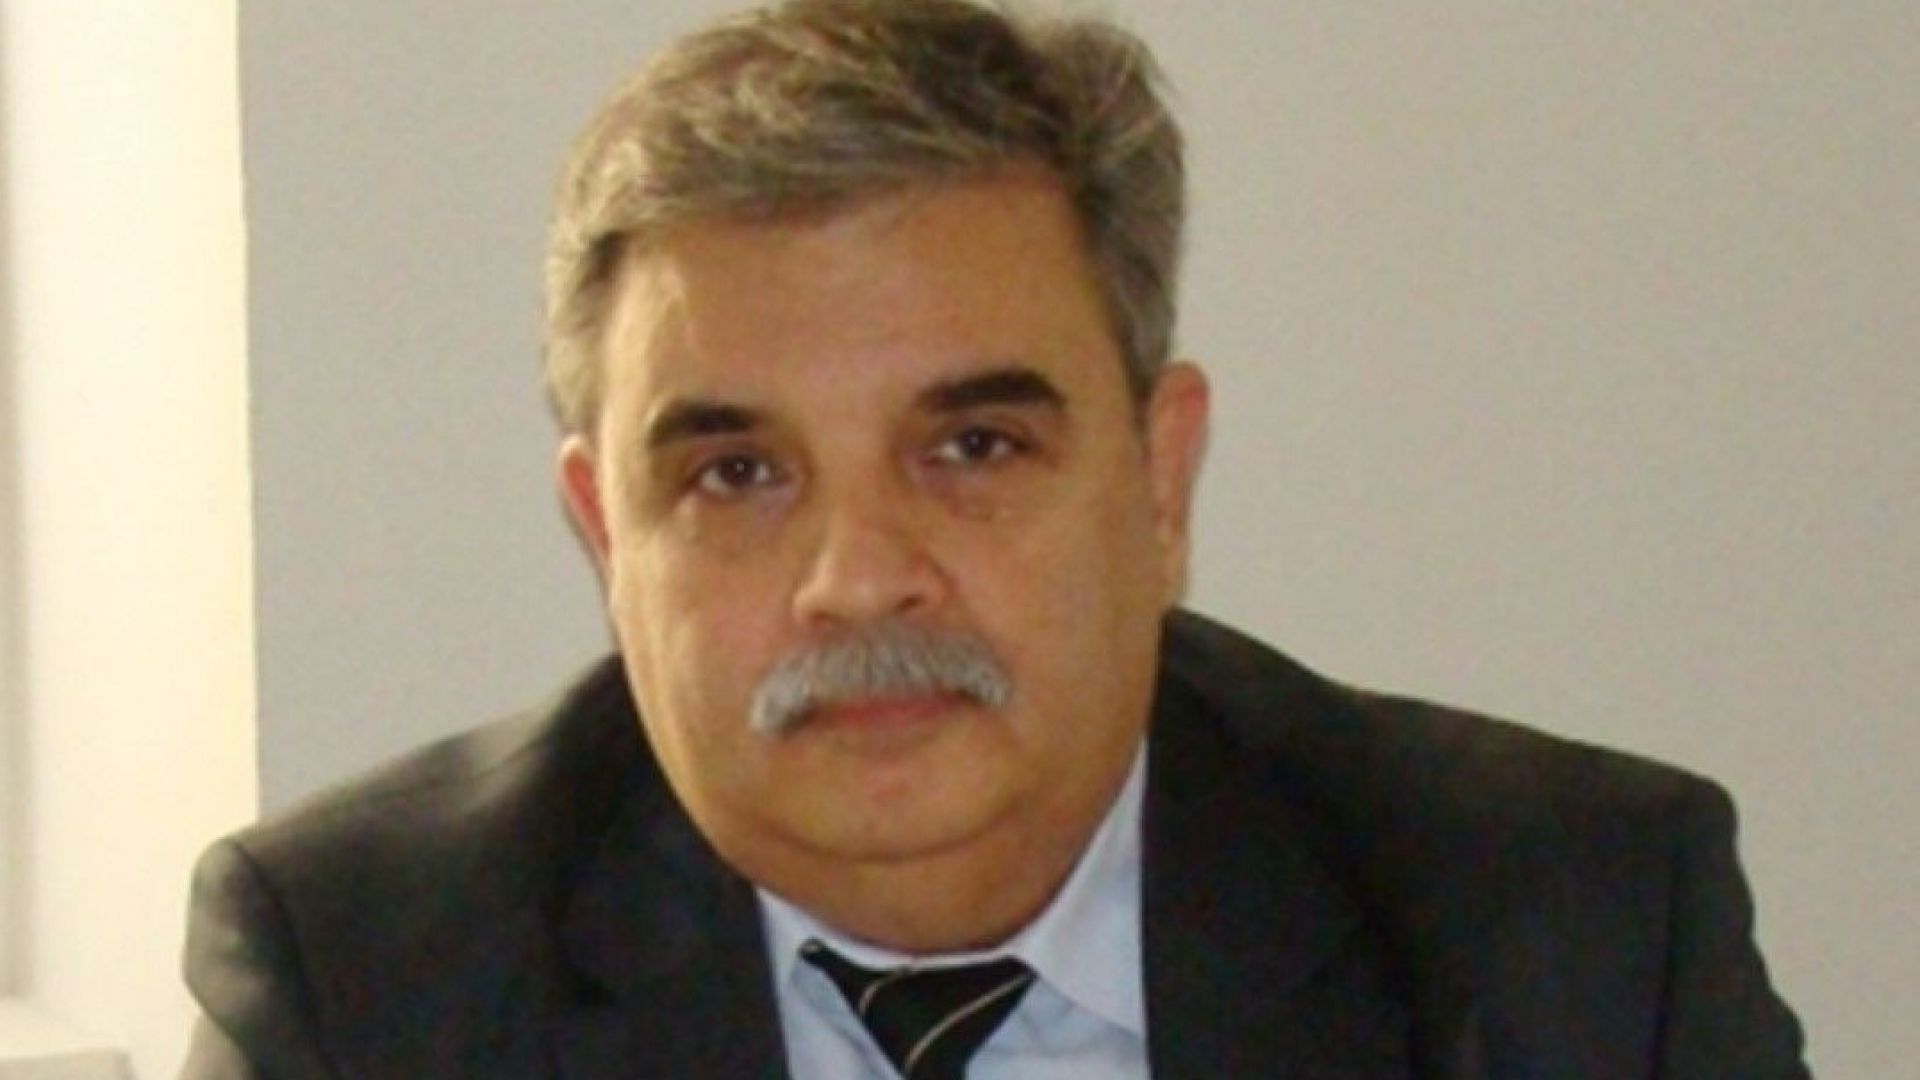 Д-р Михаил Христов е новият директор на Изпълнителната агенция по